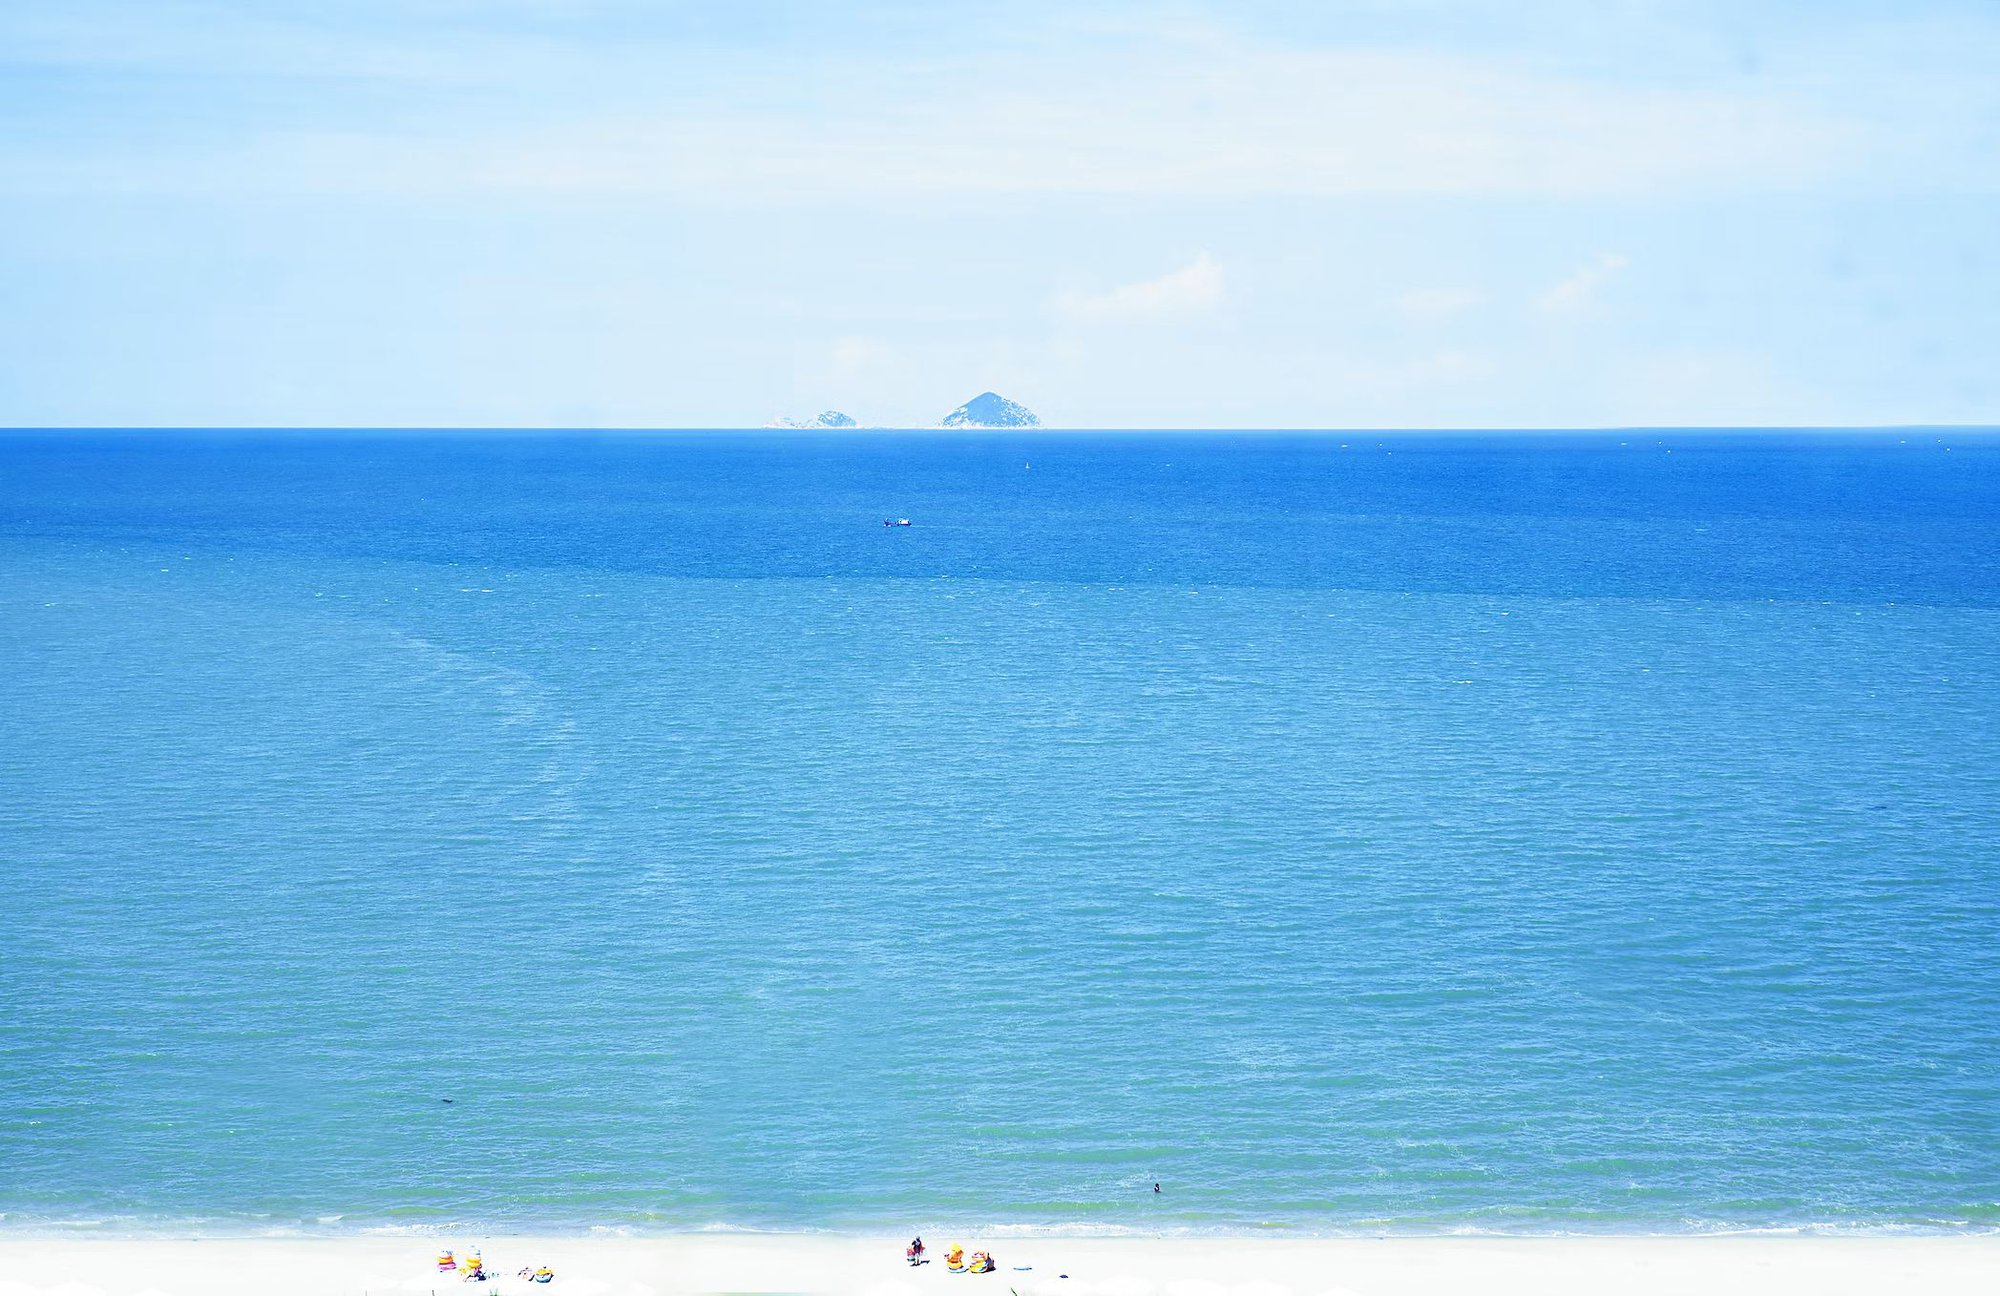 Việt Nam sở hữu 2 trong số 5 bãi biển đẹp nhất thế giới, thu hút triệu lượt xem trên TikTok  - Ảnh 11.